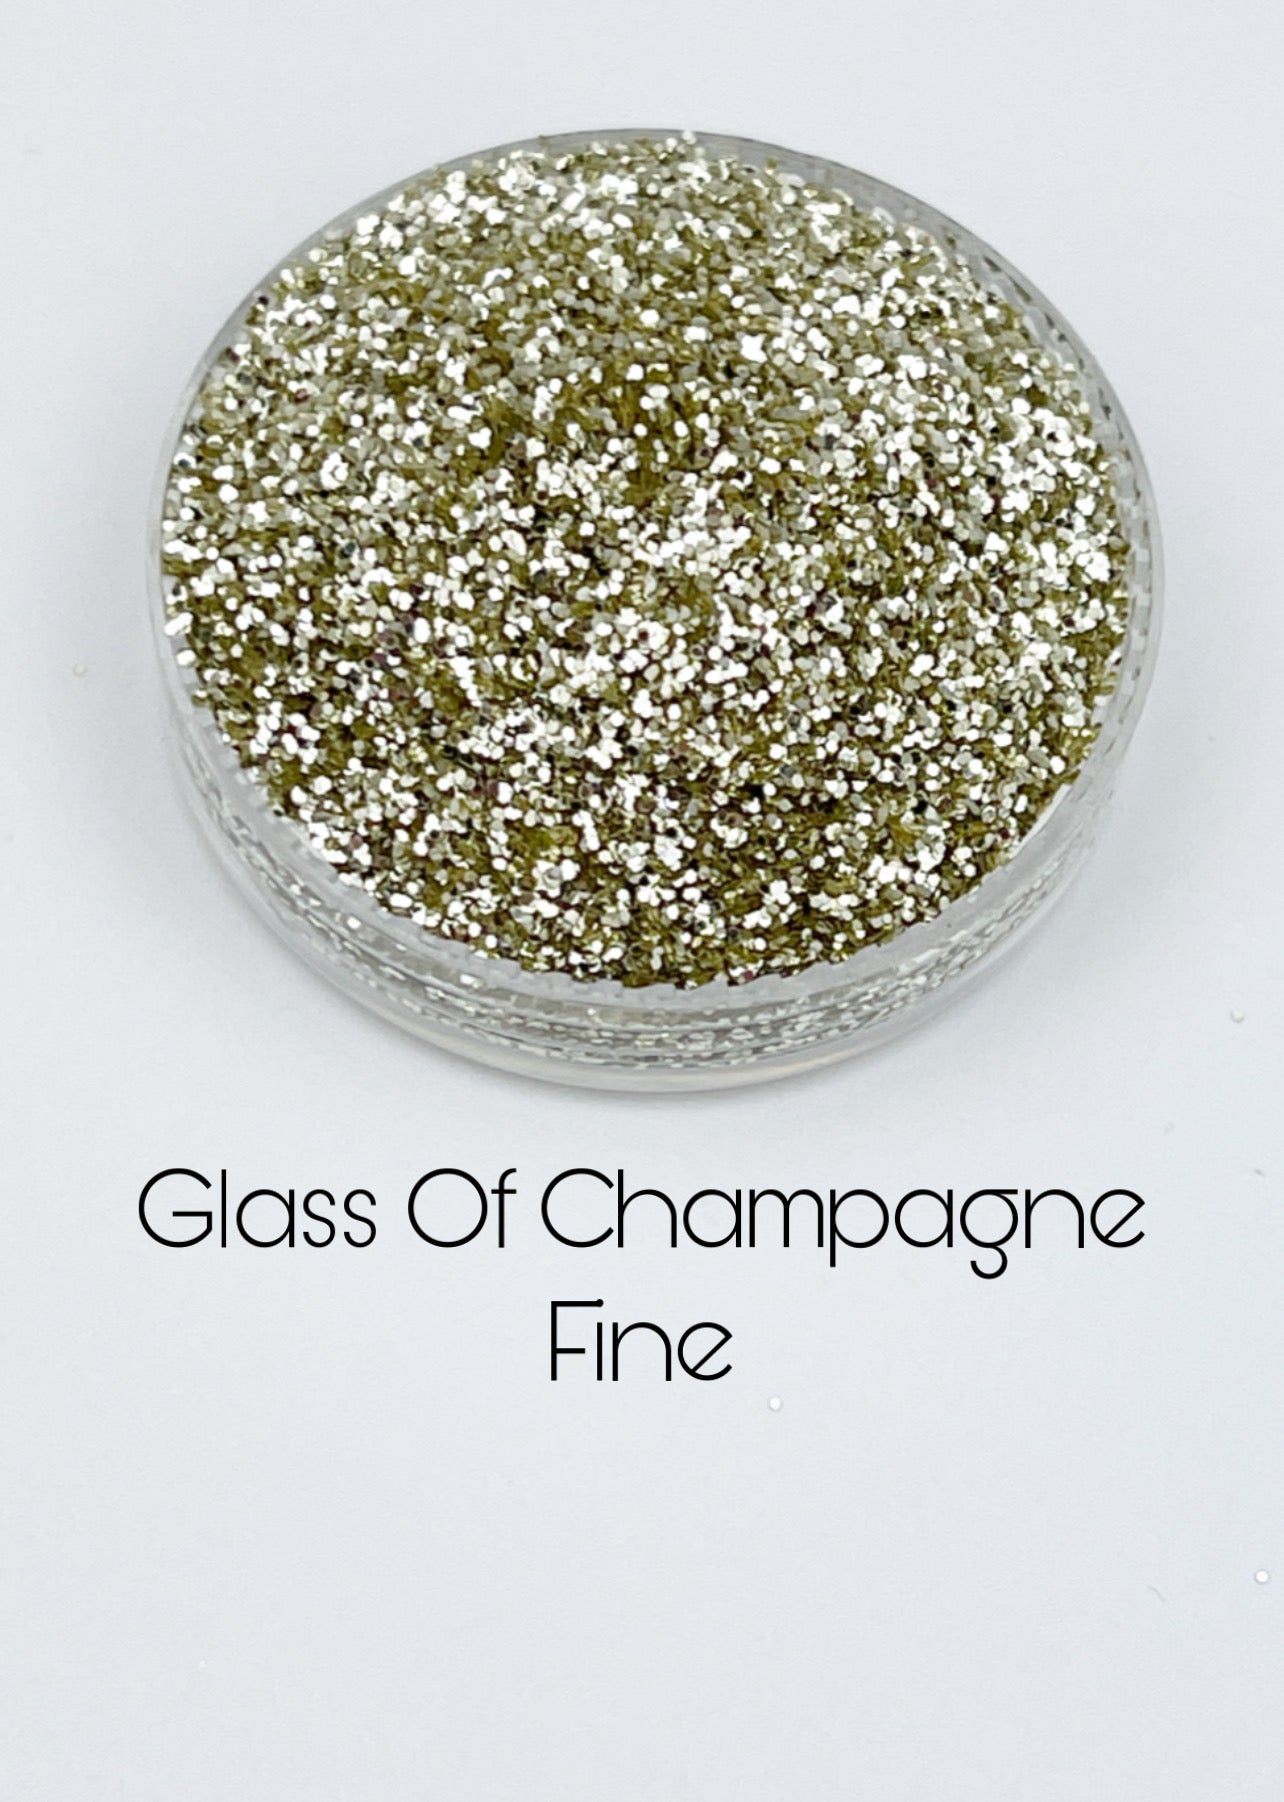 Glass of Champagne Fine